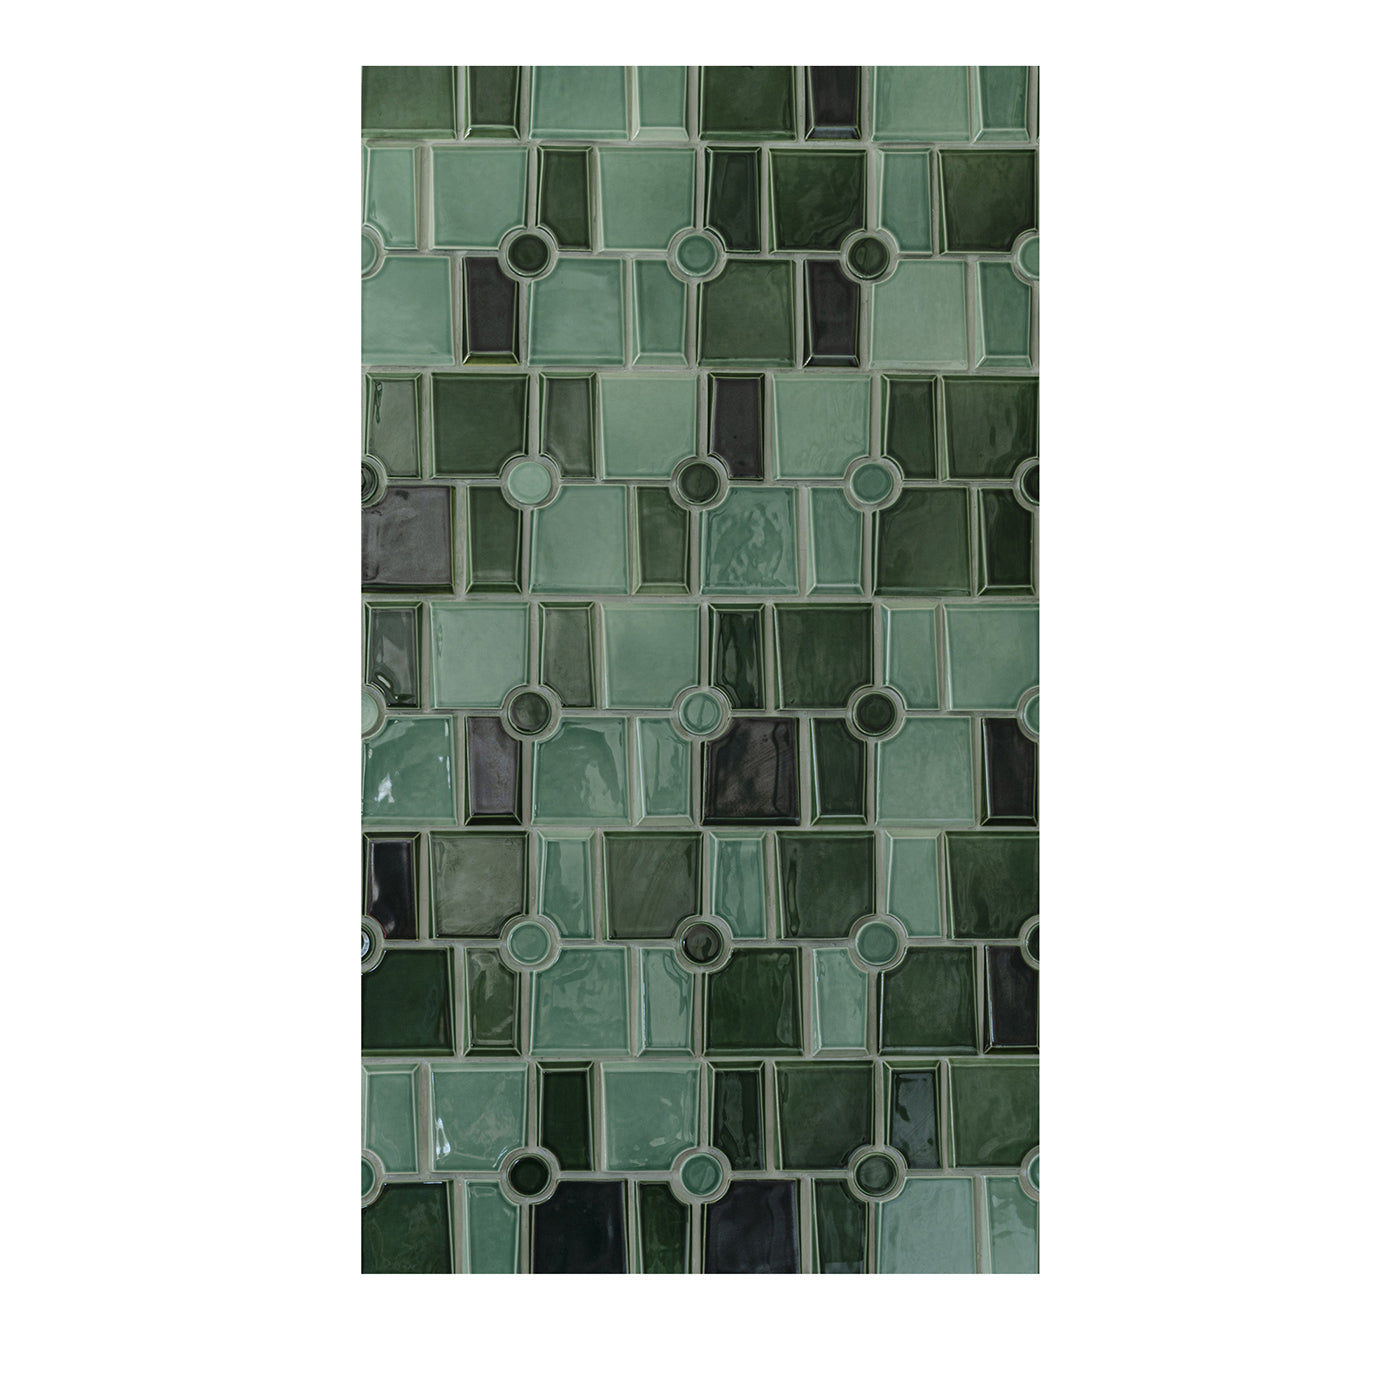 Maya 5 Green Mosaic Wall Covering by Giacomo Totti - Main view